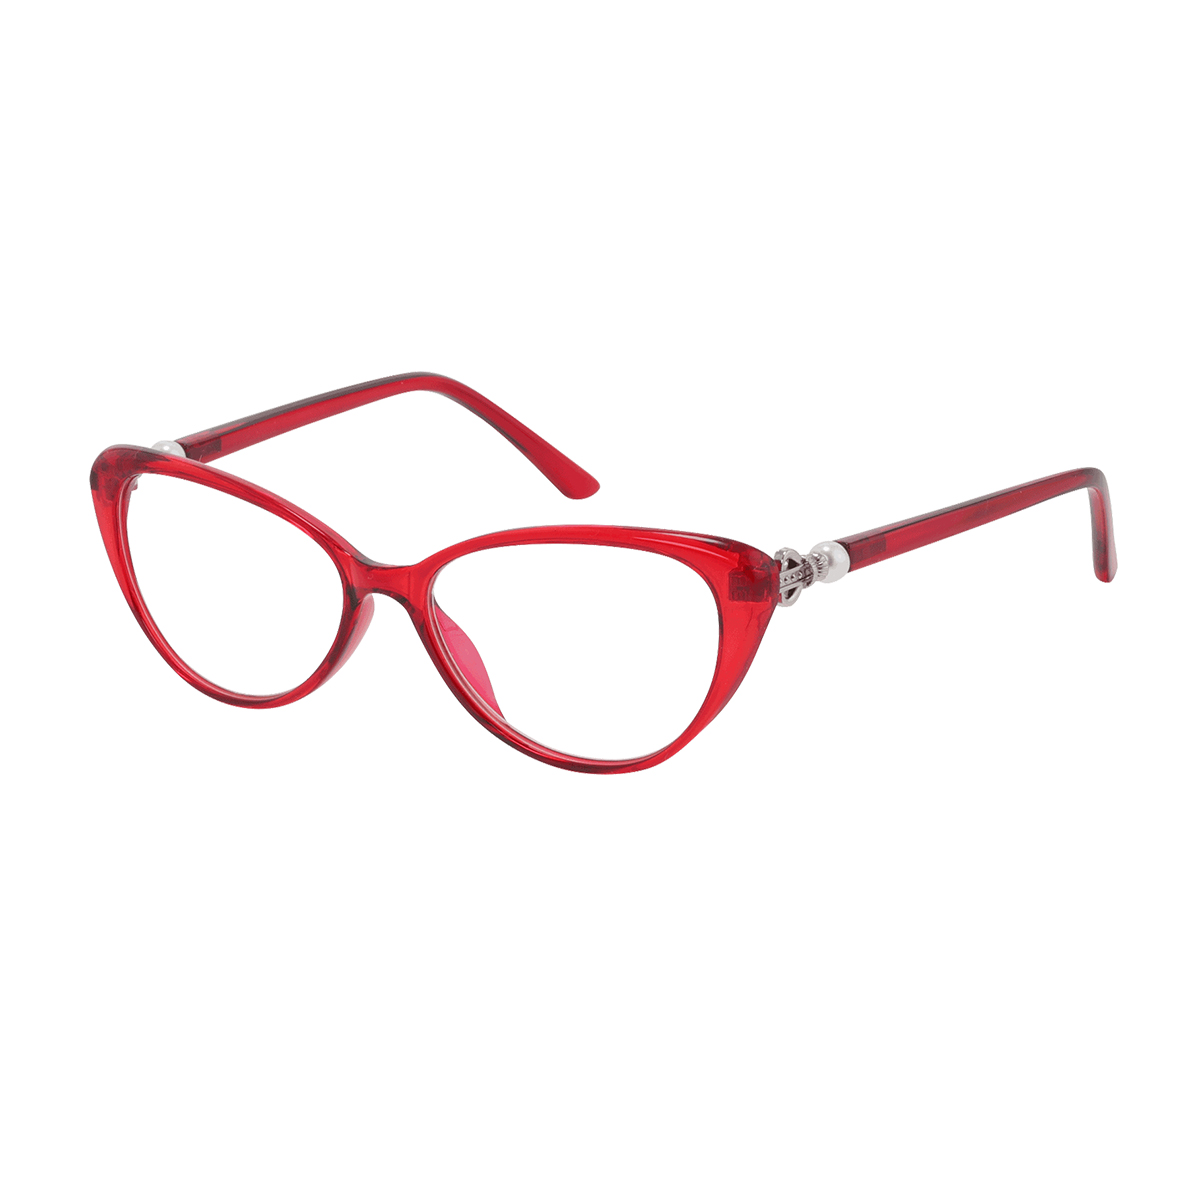 Meg - Cat-eye Transparent-Red Reading Glasses for Women